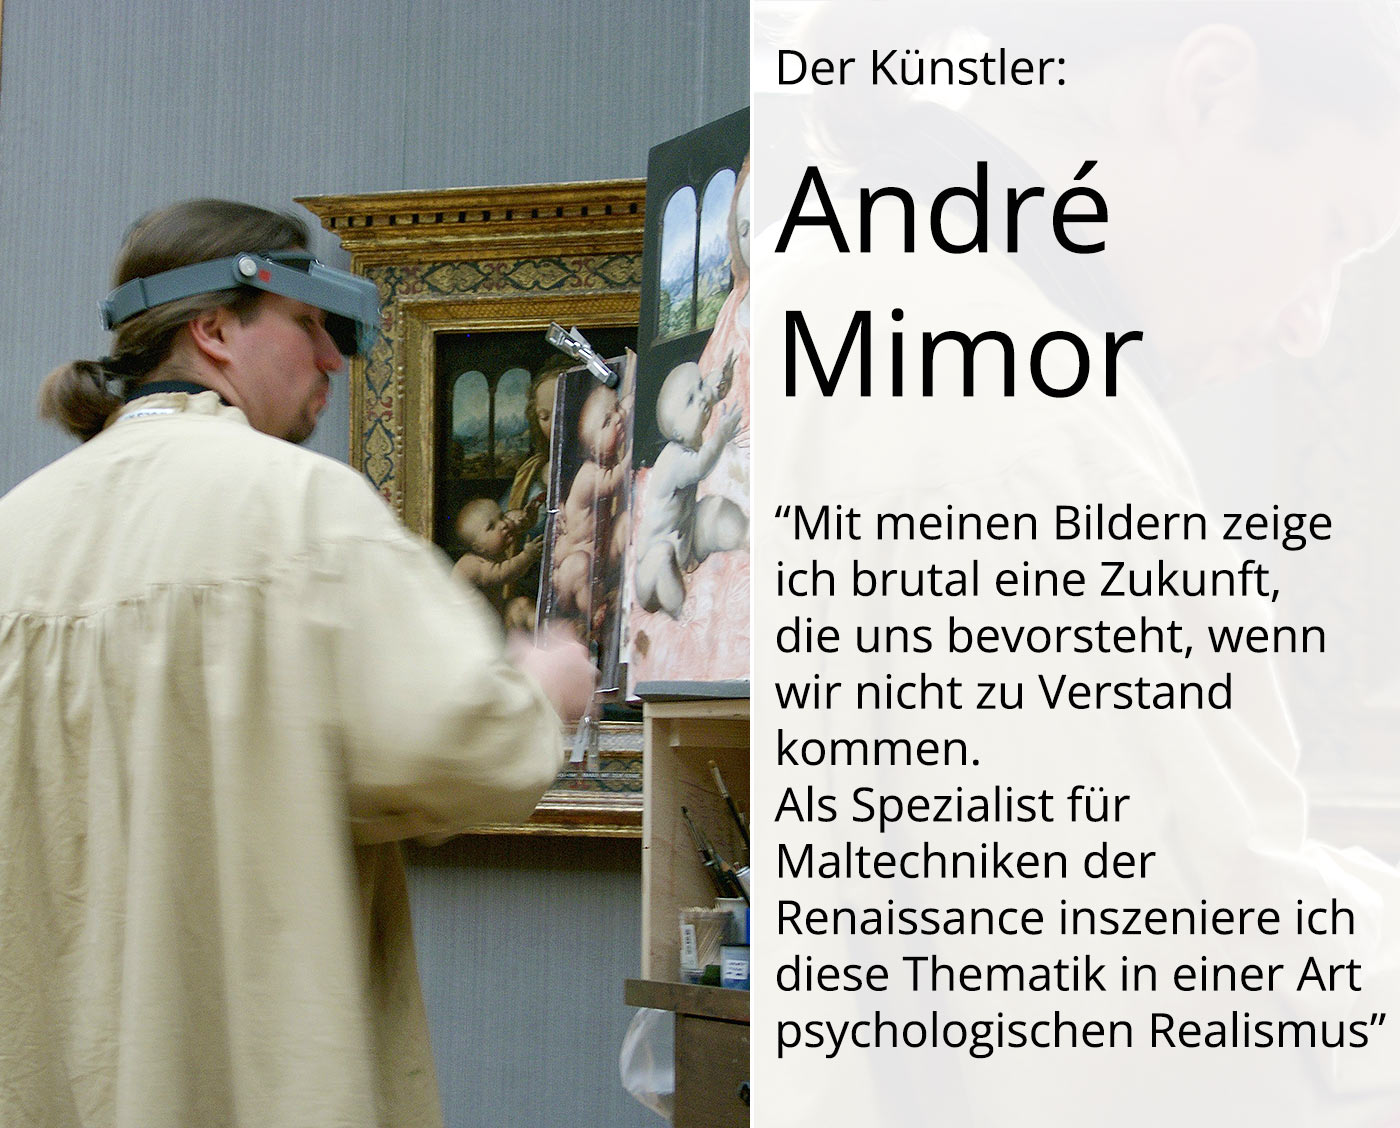 André Mimor: "Prophetenschwemme", psychologischer Realismus, Originalgemälde (Unikat) (A)